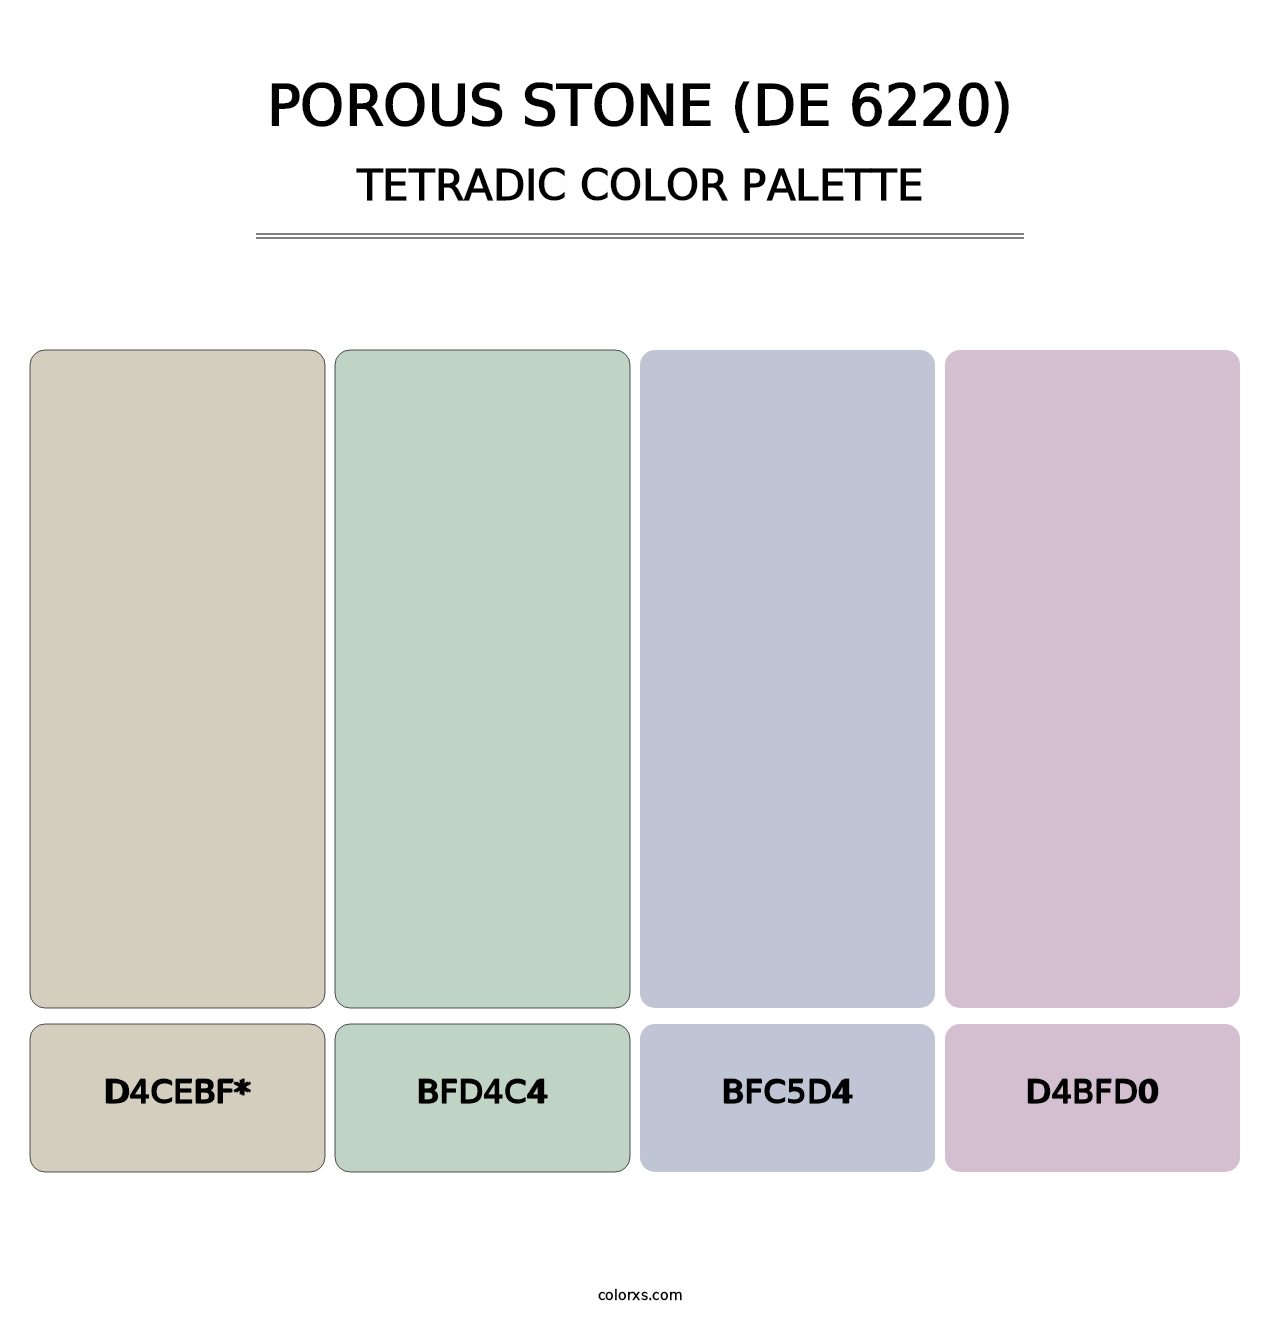 Porous Stone (DE 6220) - Tetradic Color Palette